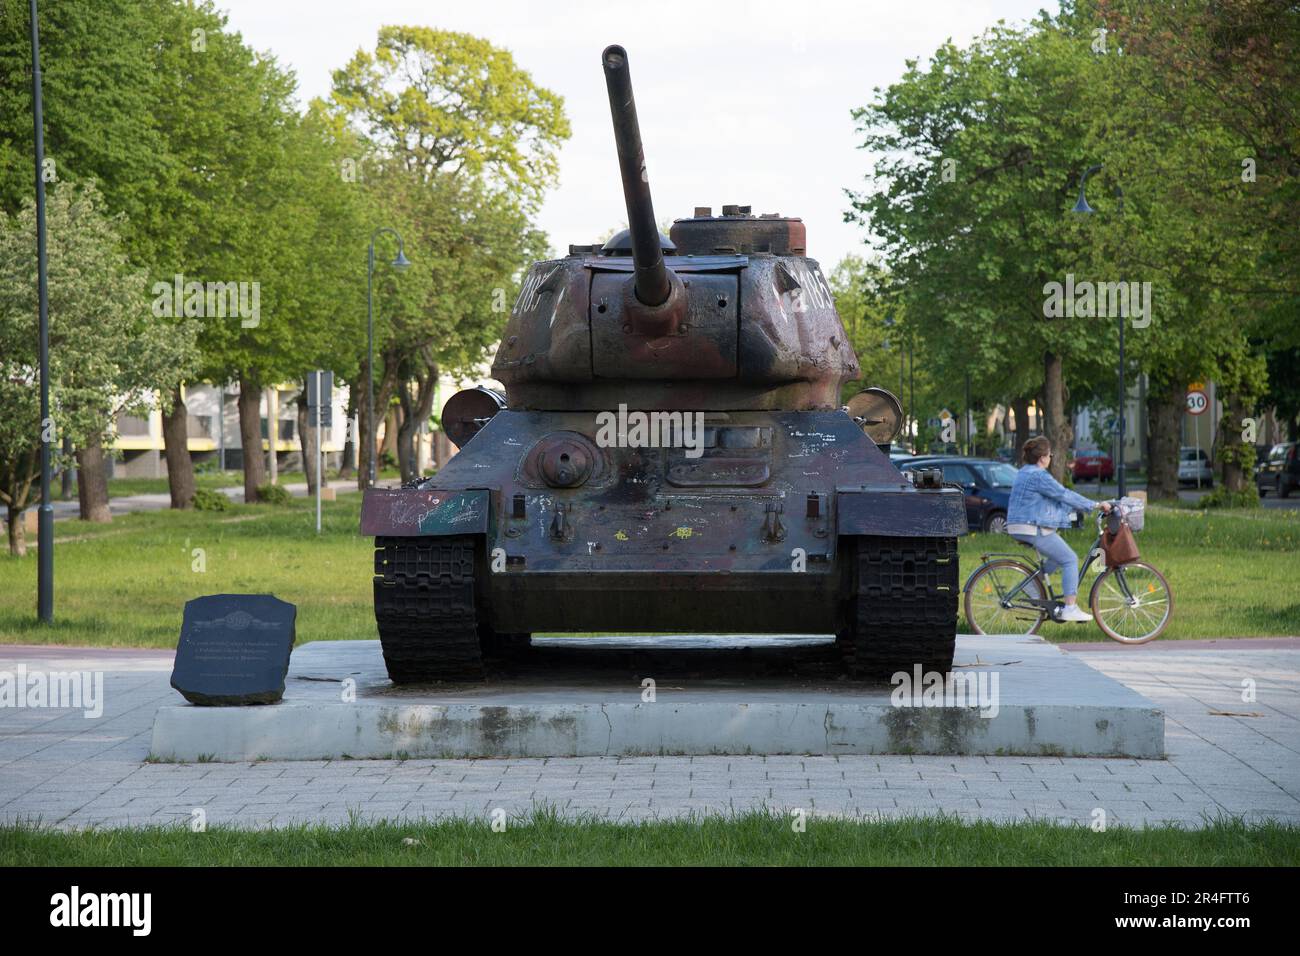 Russian tank T-34 85 in Braniewo, Poland © Wojciech Strozyk / Alamy Stock Photo Stock Photo